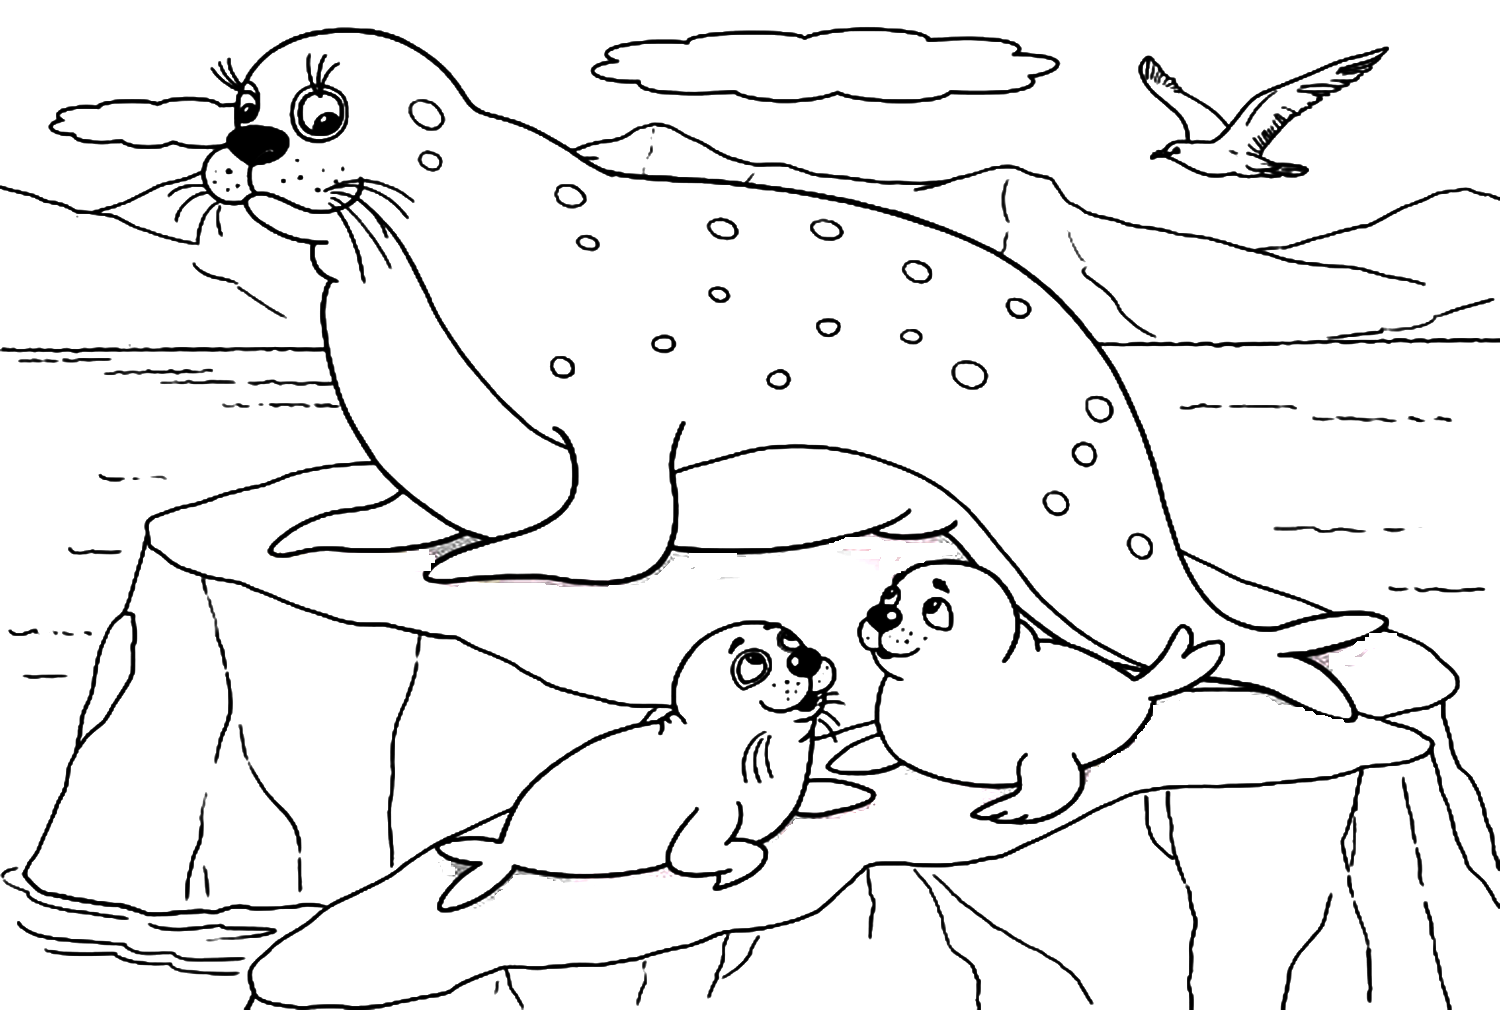 Familia de focas de Foca